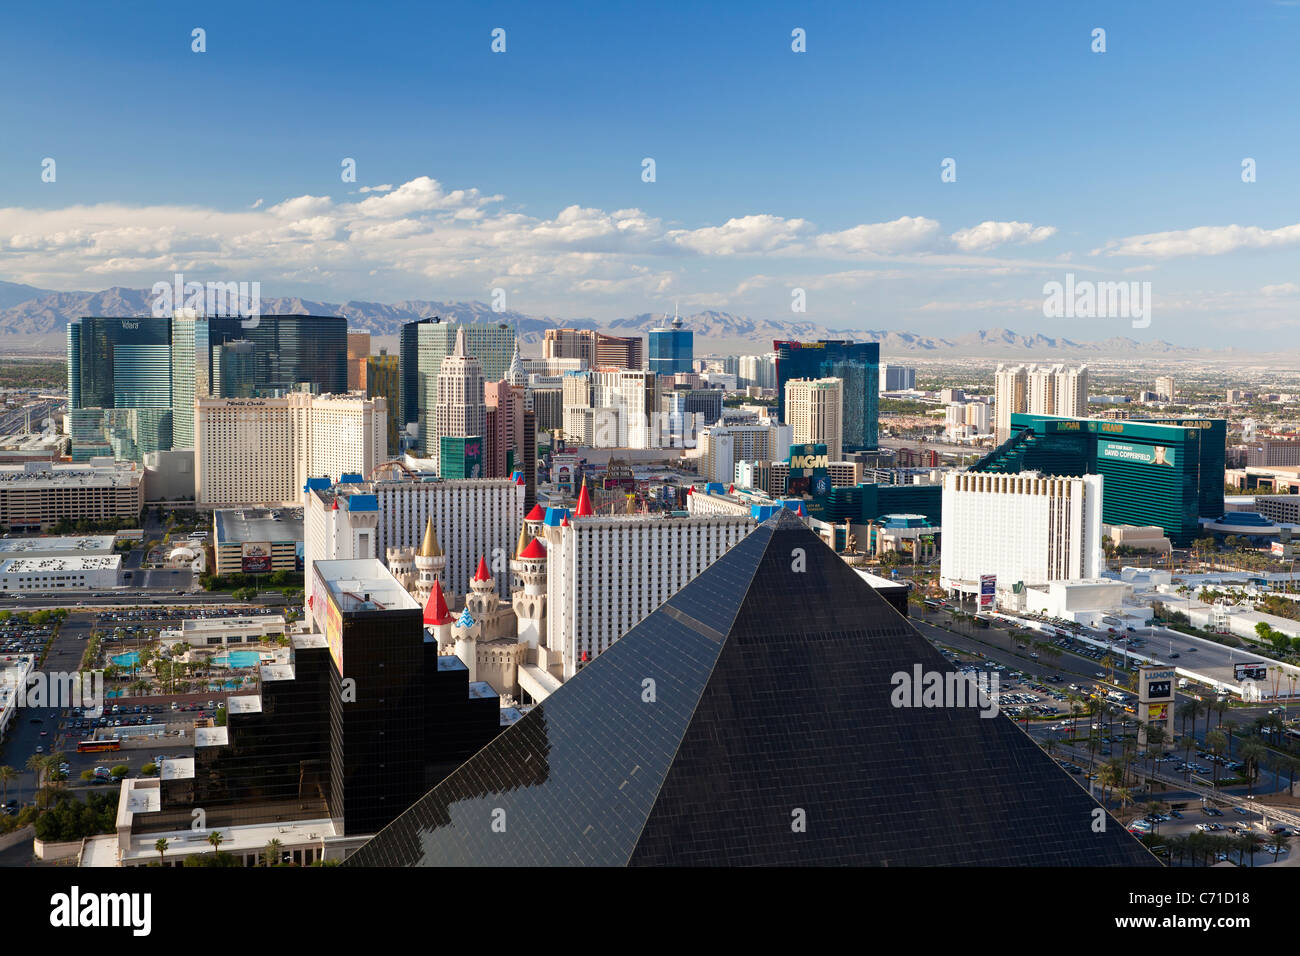 Vereinigte Staaten von Amerika, Nevada, Las Vegas, erhöhten Blick auf die Hotels und Casinos am Strip entlang Stockfoto